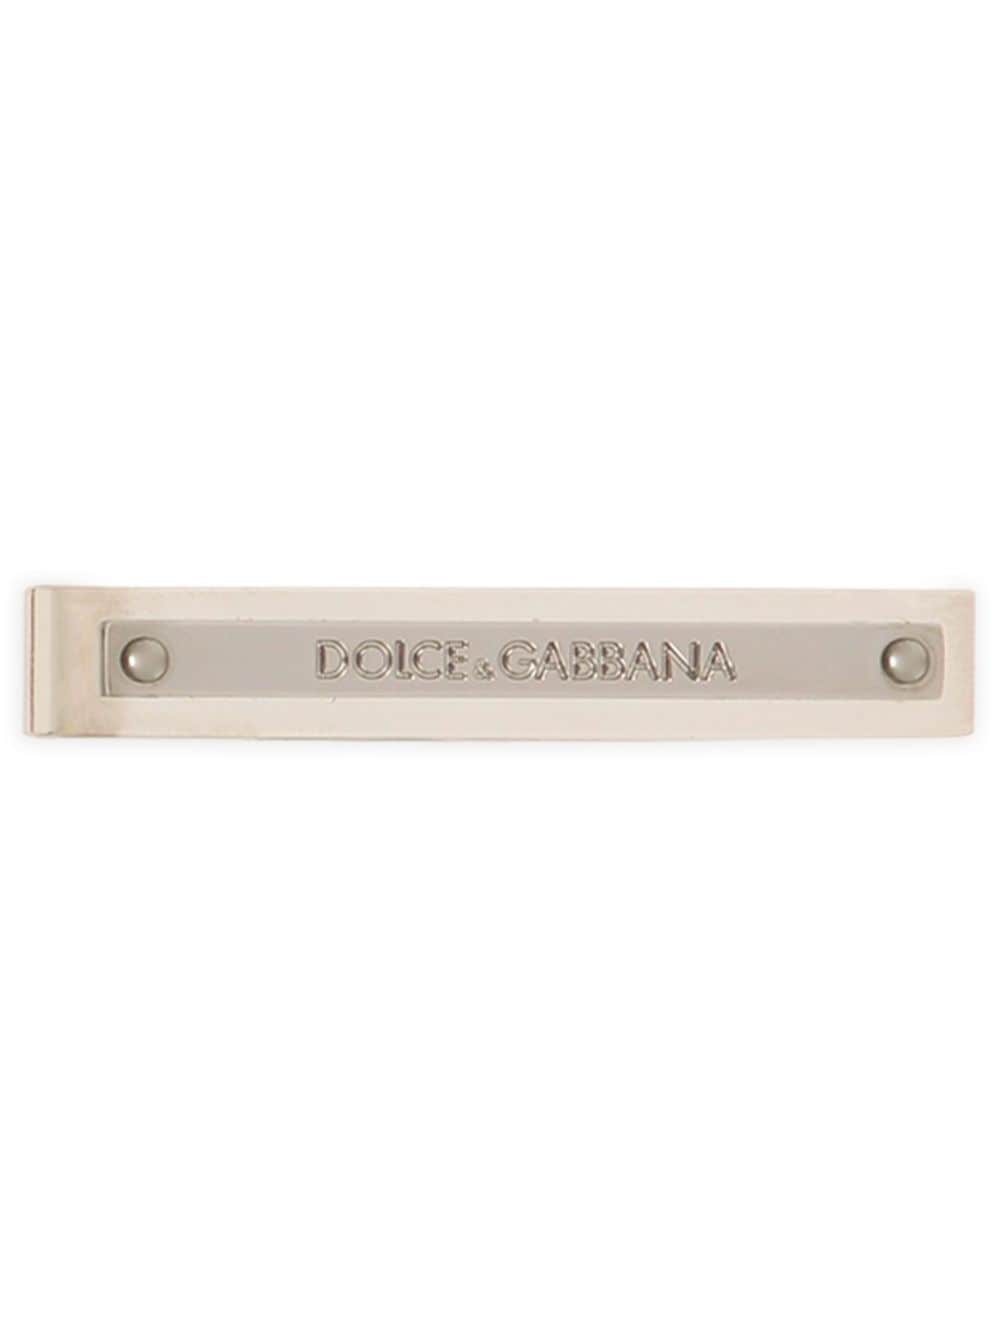 Dolce & Gabbana engraved-logo brass tie clip - Argento